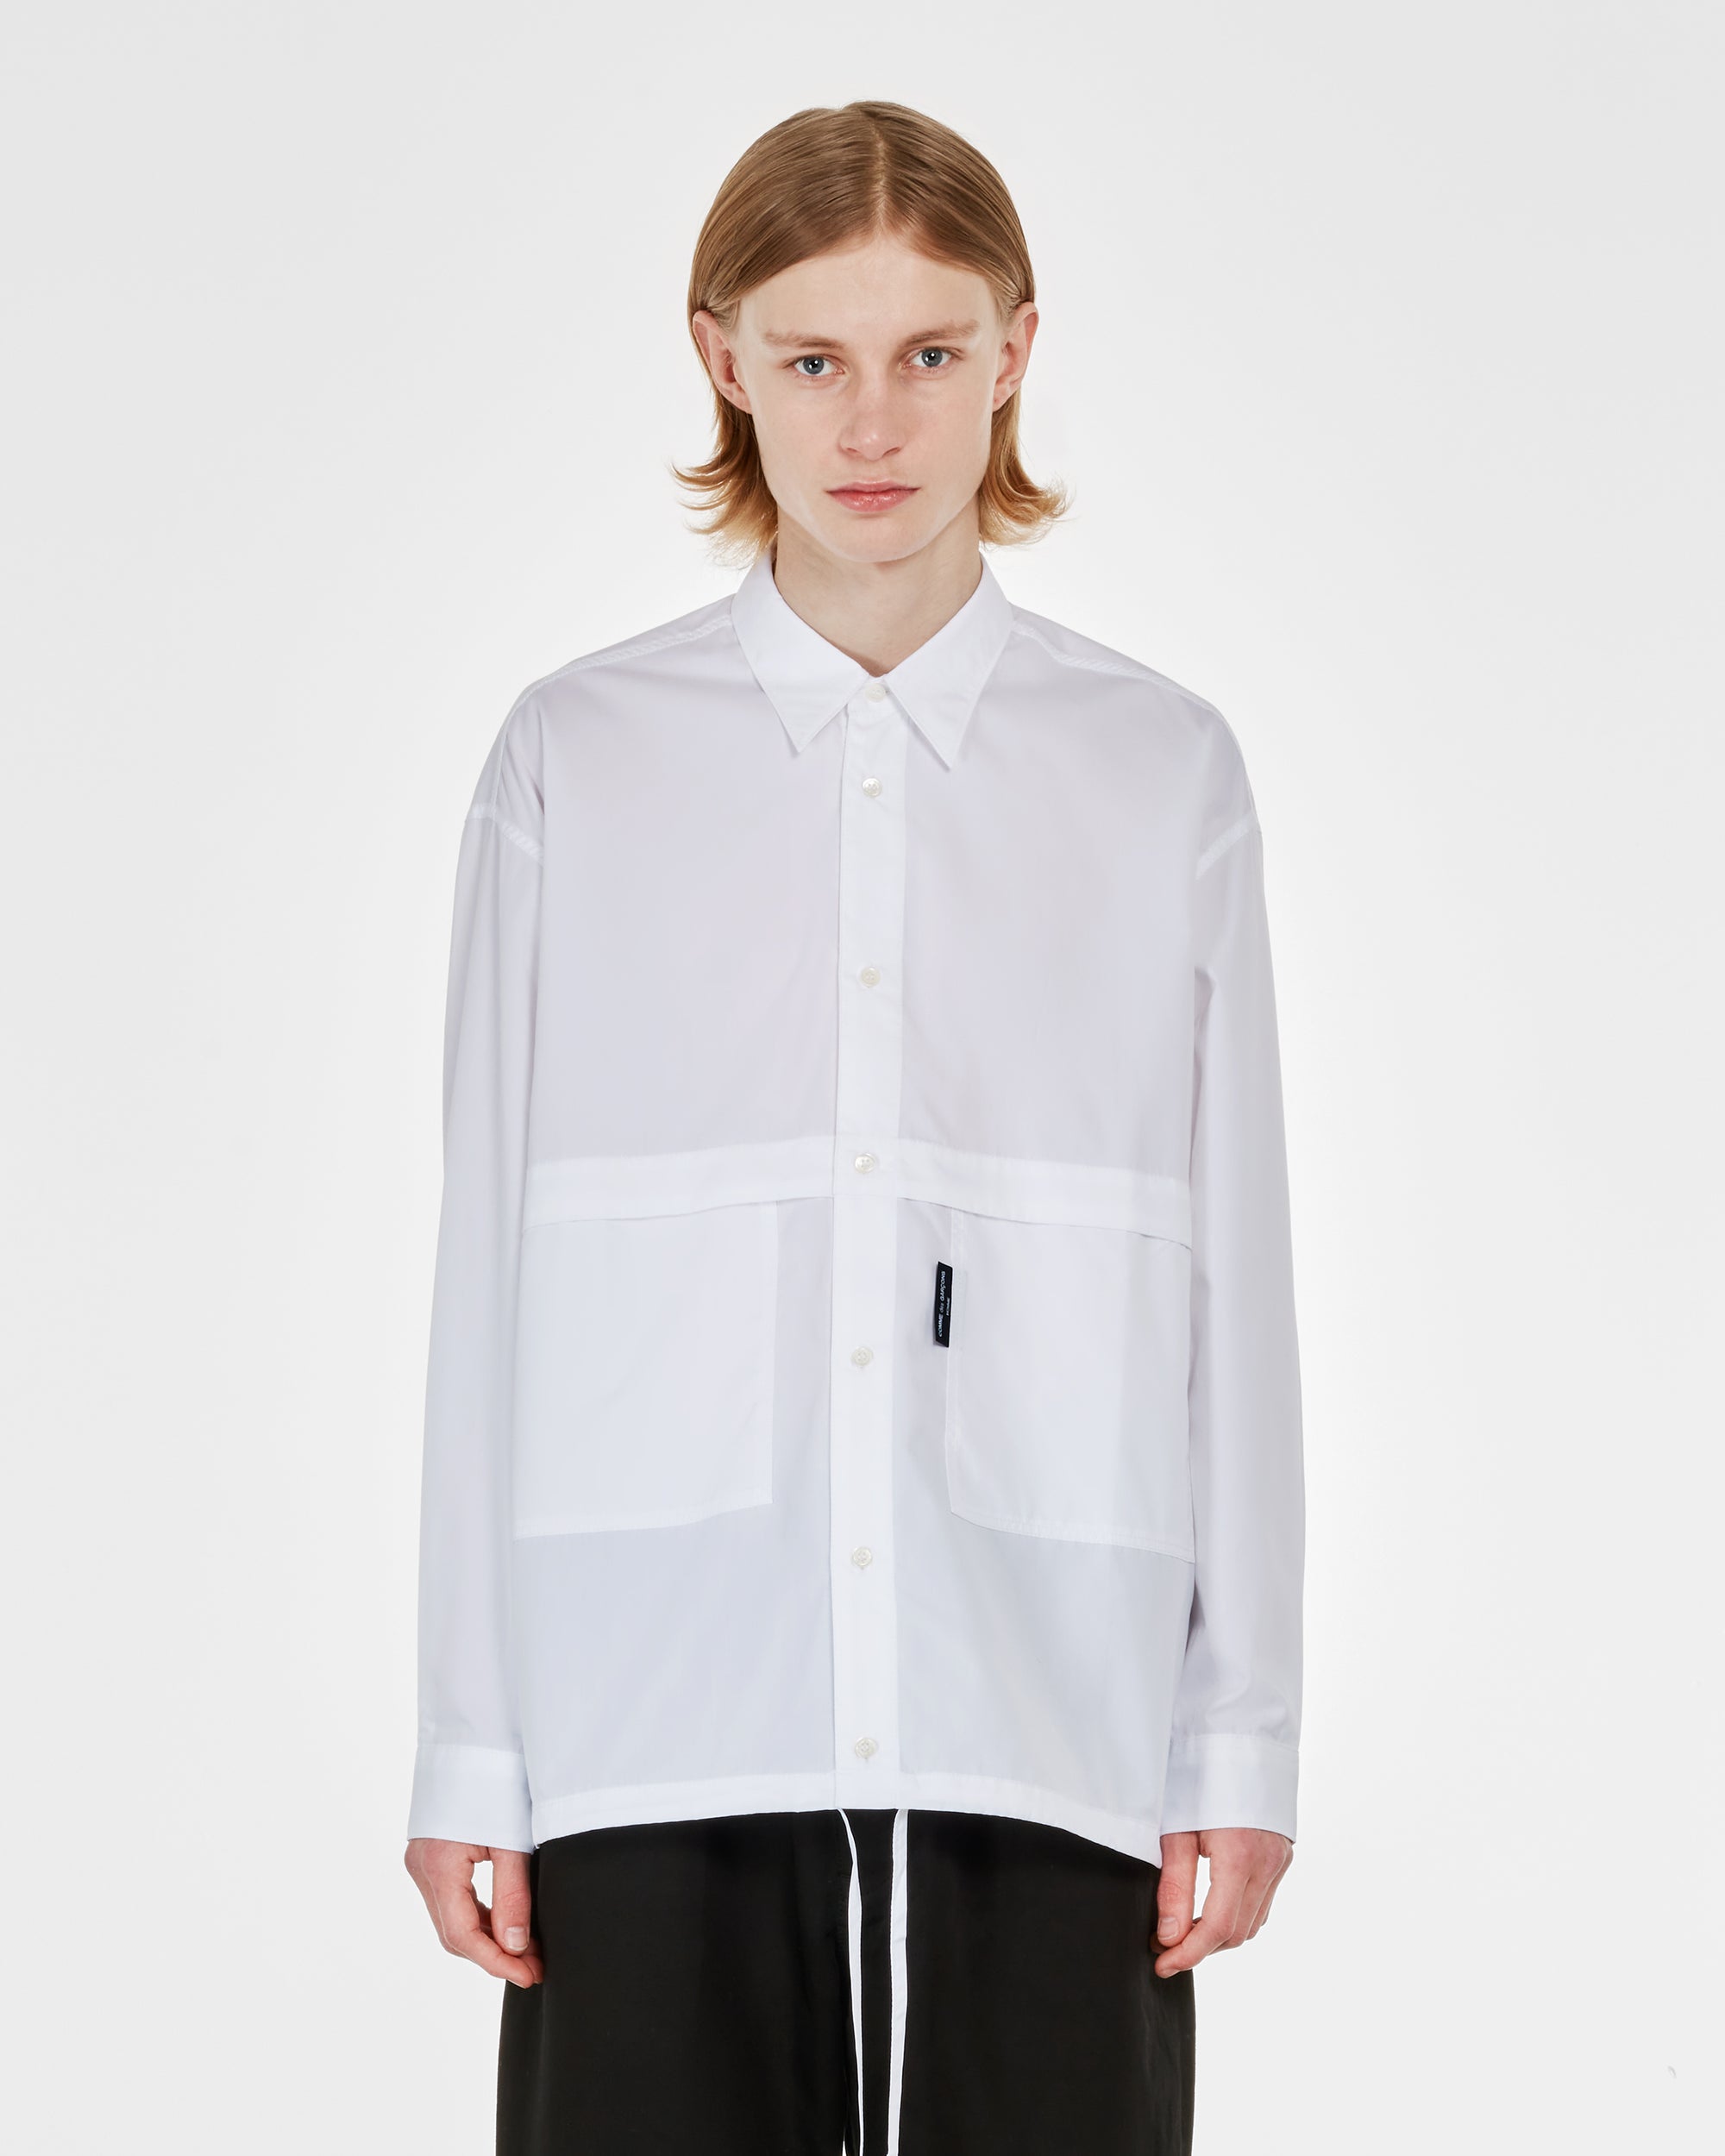 Comme des Garçons Homme - Men's Cotton Shirt - (White) view 2